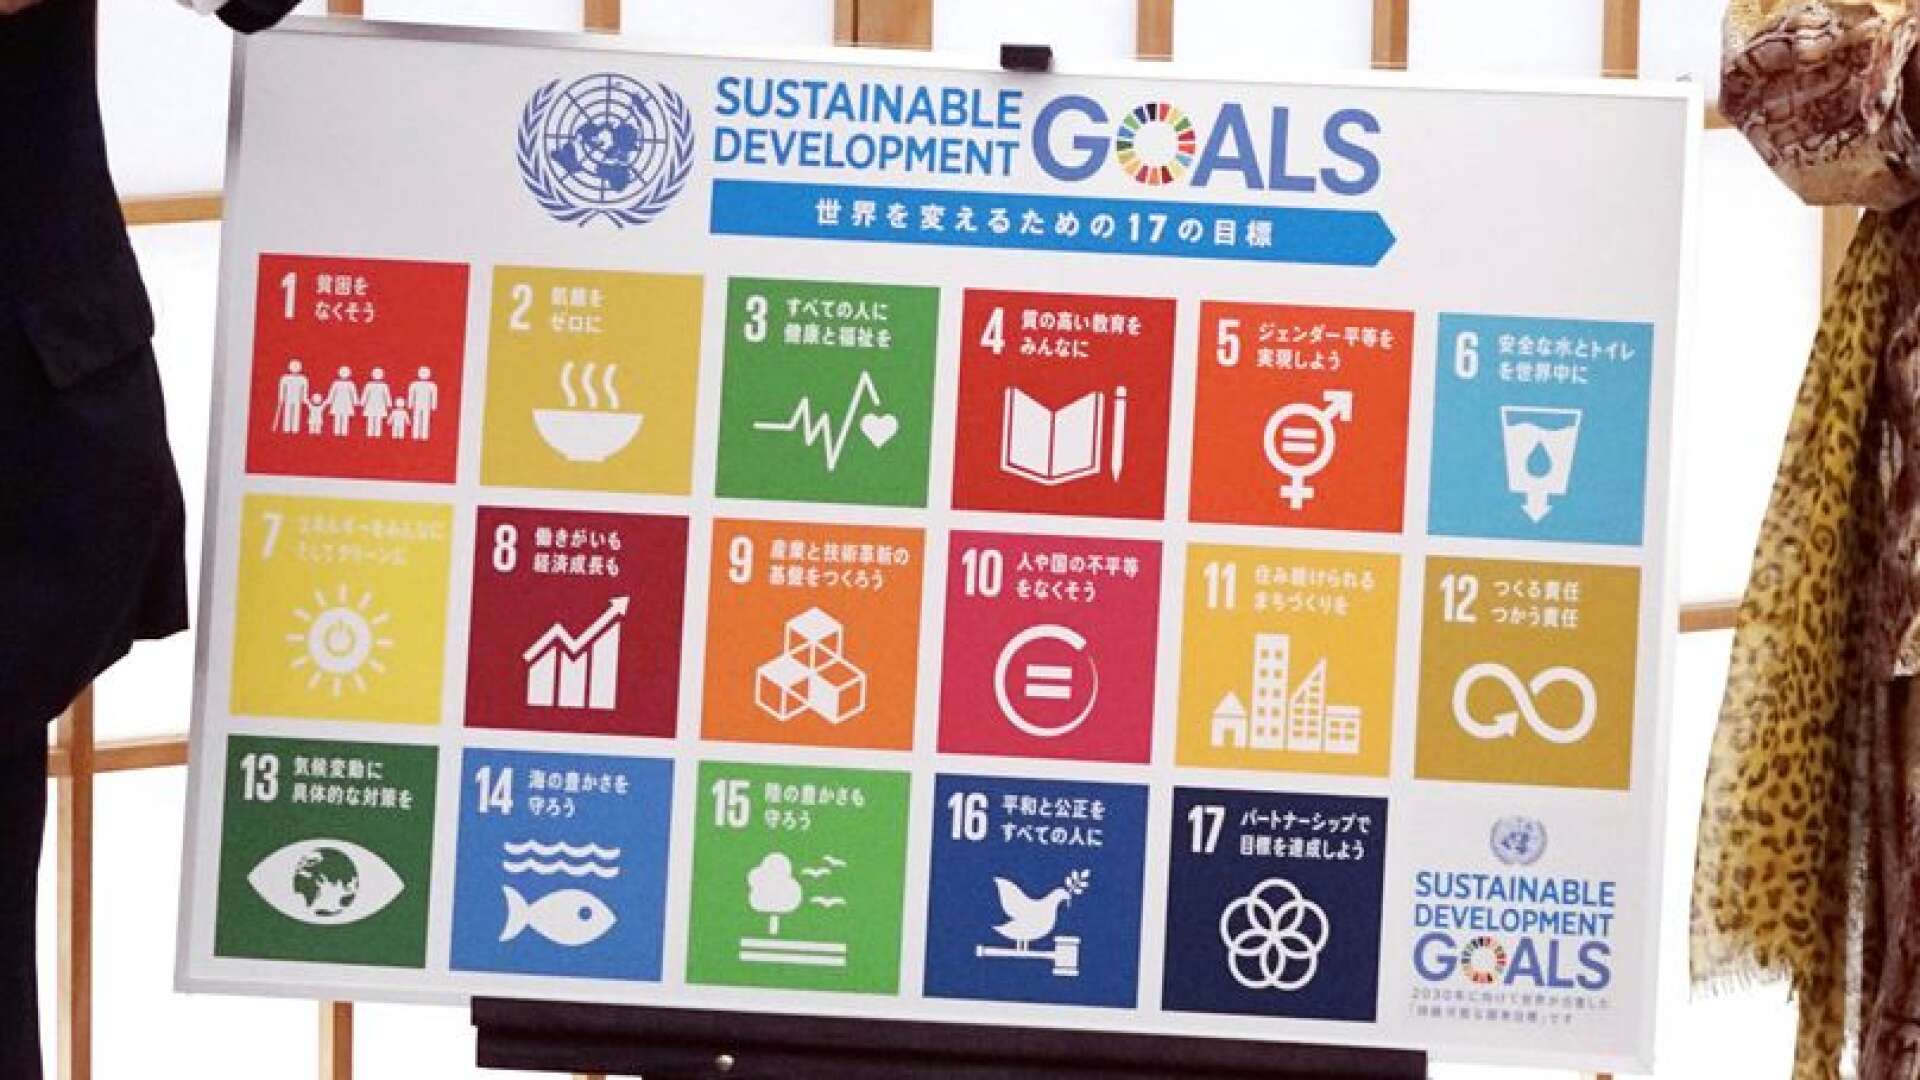 I september var det fyra år sedan världens ledare i FN beslutade om de 17 globala målen, som ska vägleda politiker, företag och privatpersoner till en värld fri från fattigdom och hunger till 2030, skriver Anna Tibblin, Tomas Sjölander och Lars Ericsson.